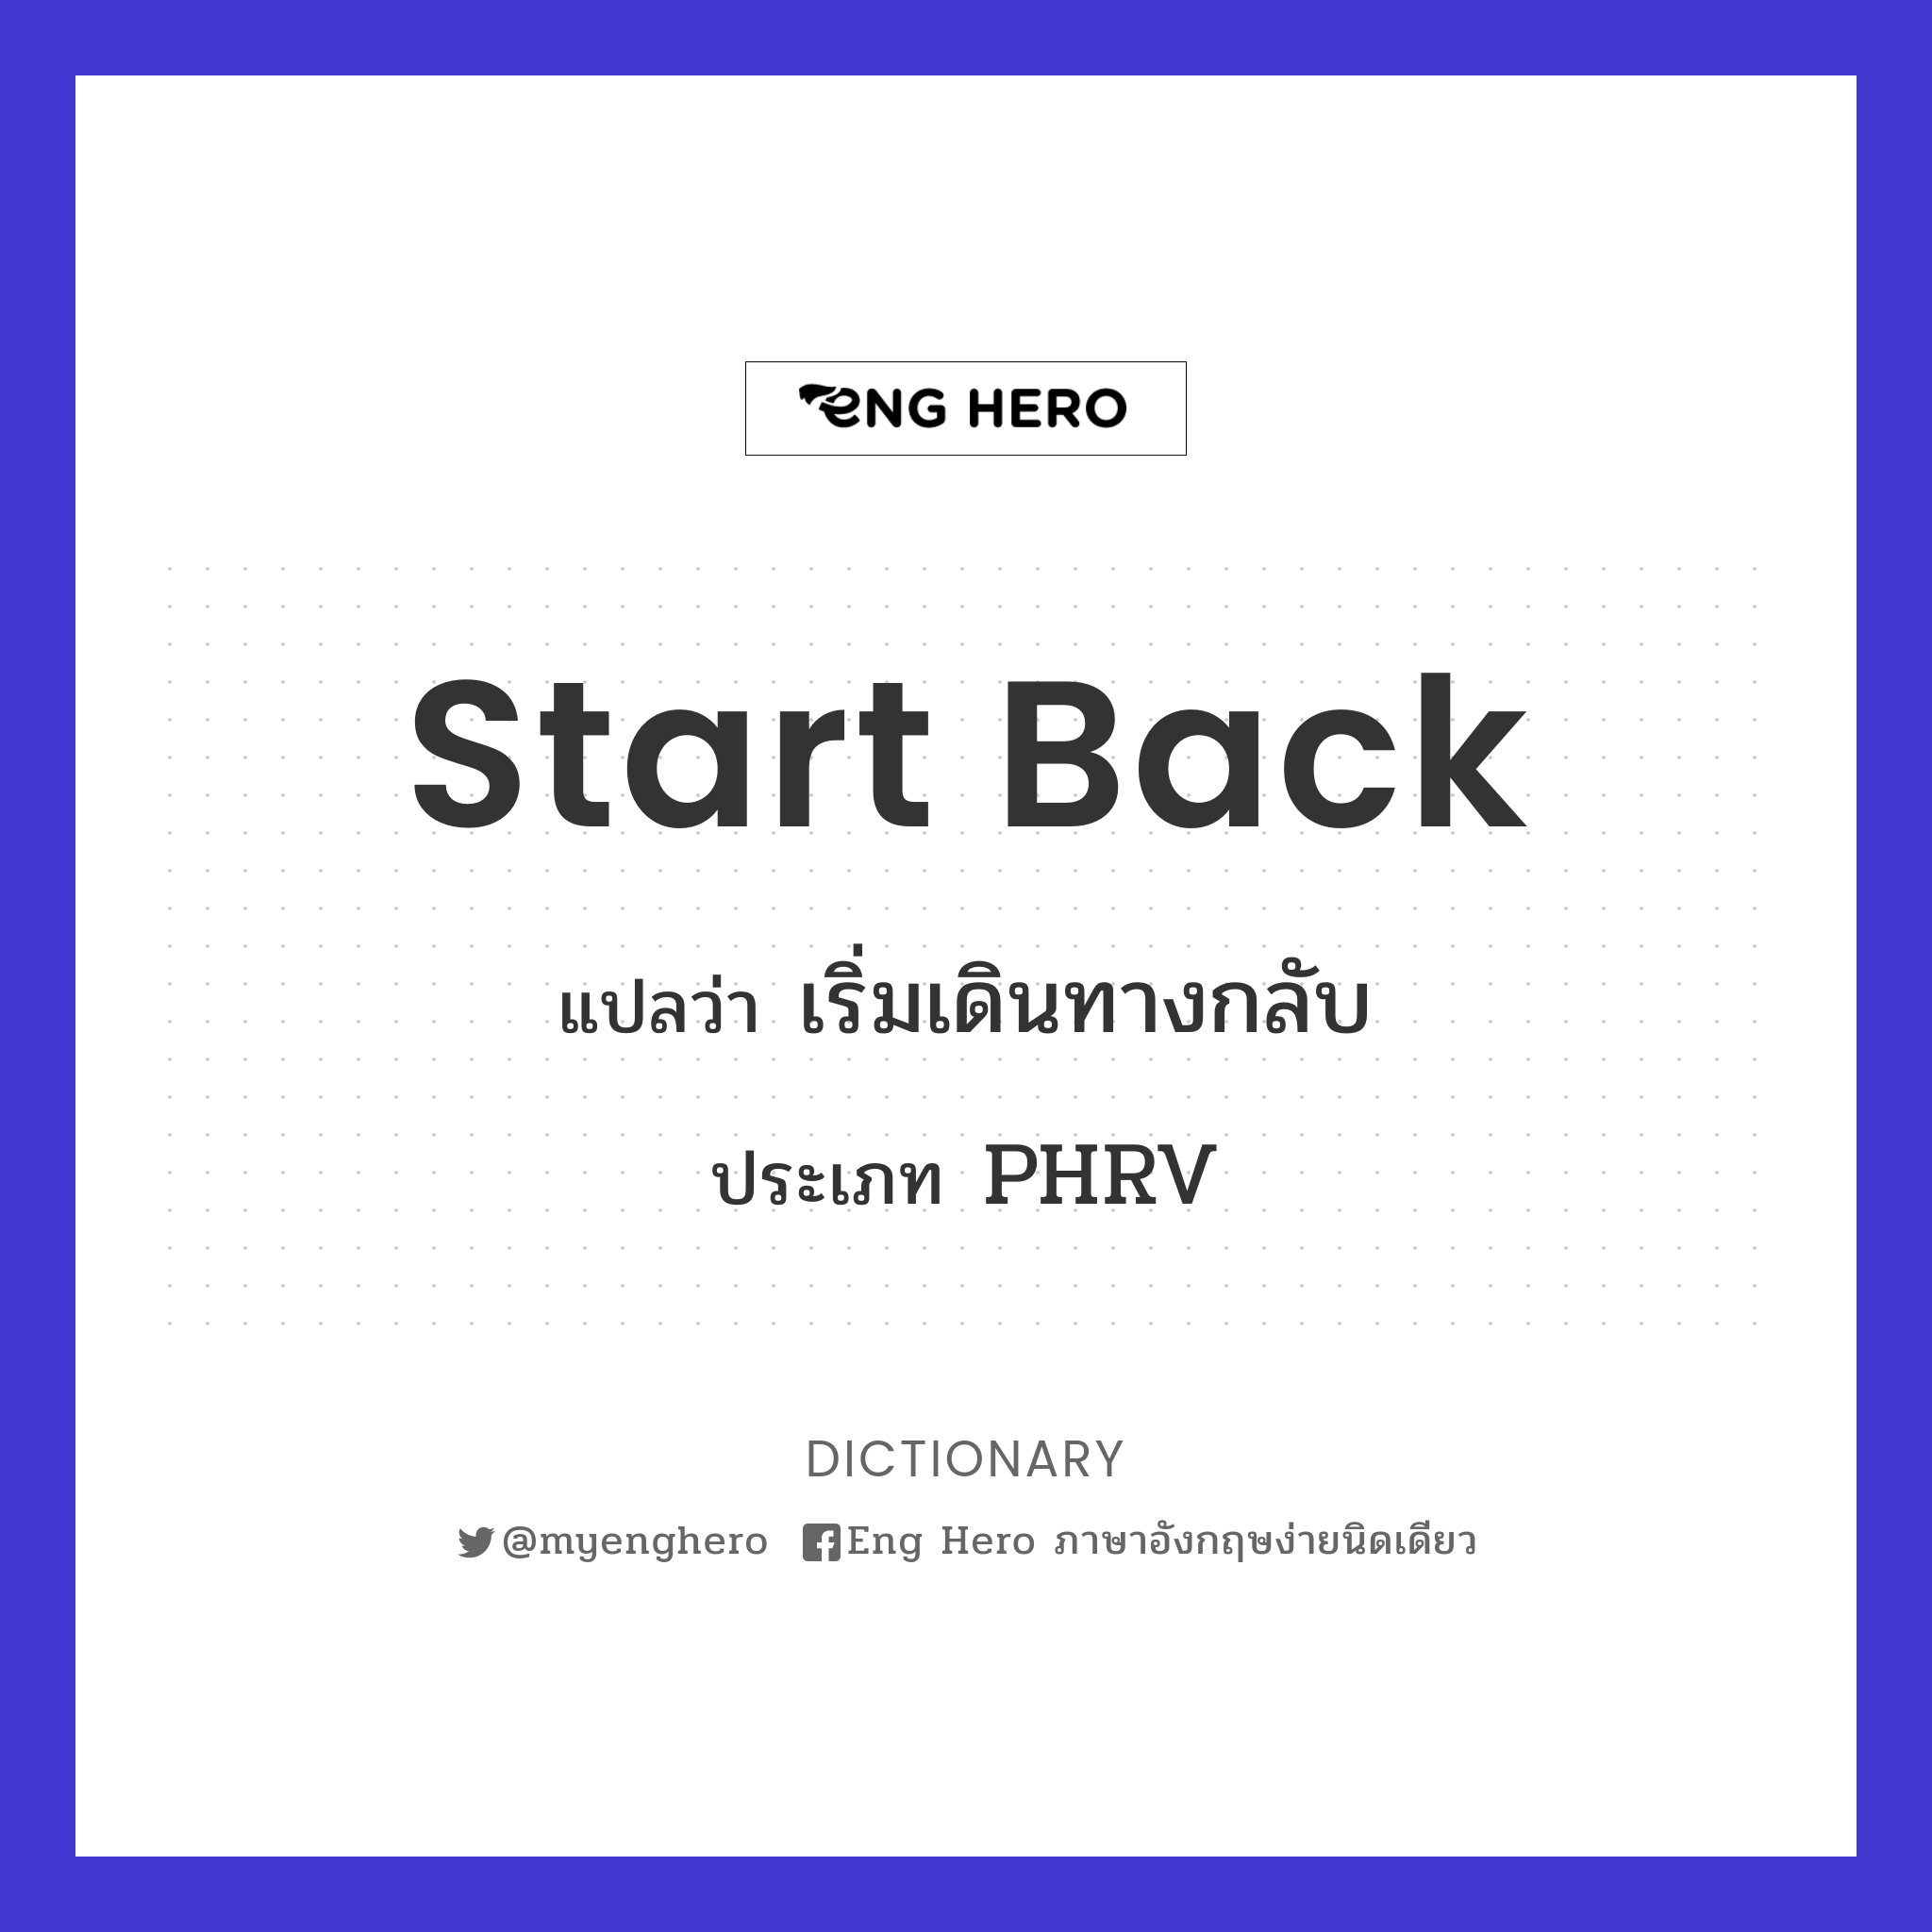 Start Back แปลว่า เริ่มเดินทางกลับ | Eng Hero เรียนภาษาอังกฤษ ออนไลน์ ฟรี